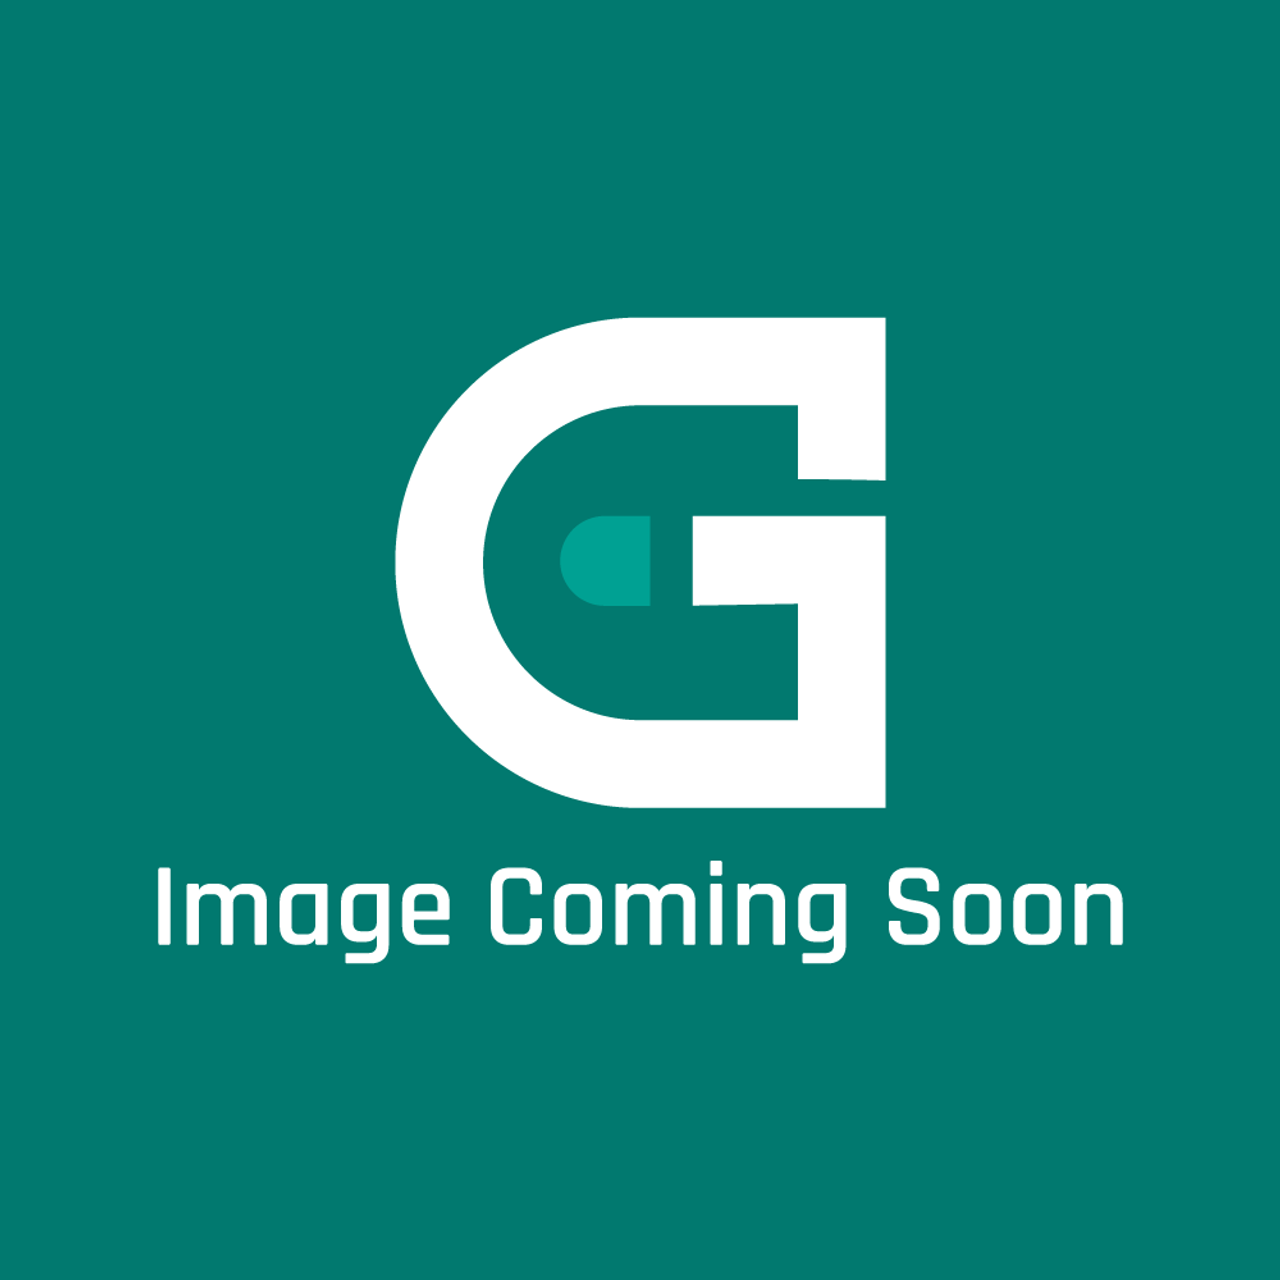 Frigidaire - Electrolux 903048-9010 Backsplash Kit - Image Coming Soon!